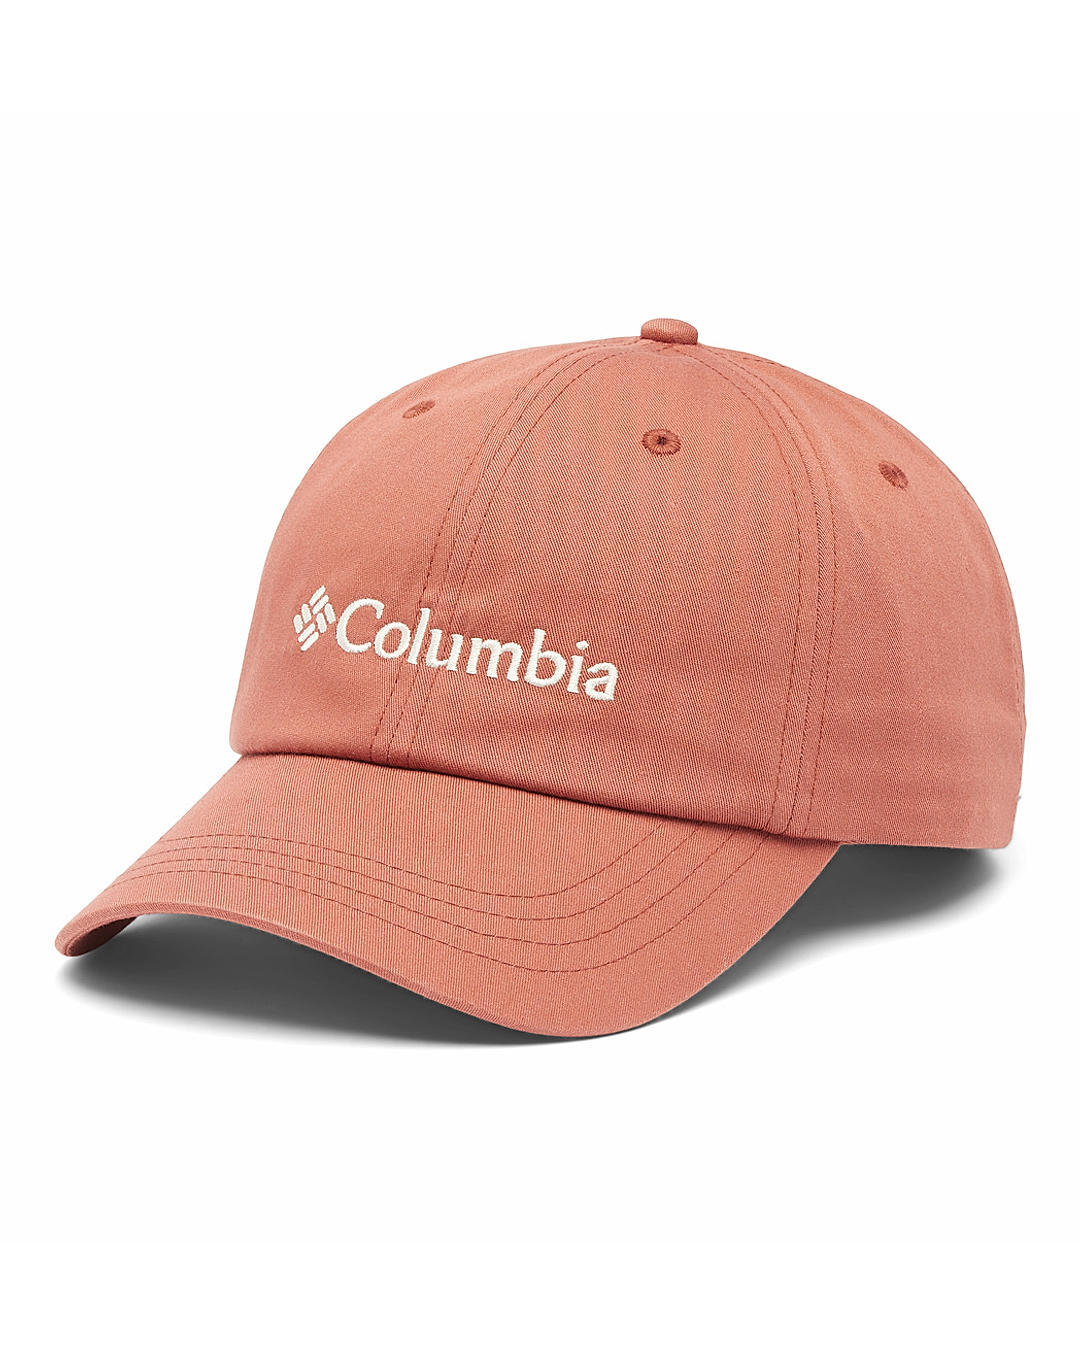 Columbia Unisex Brown ROC II Ball Cap